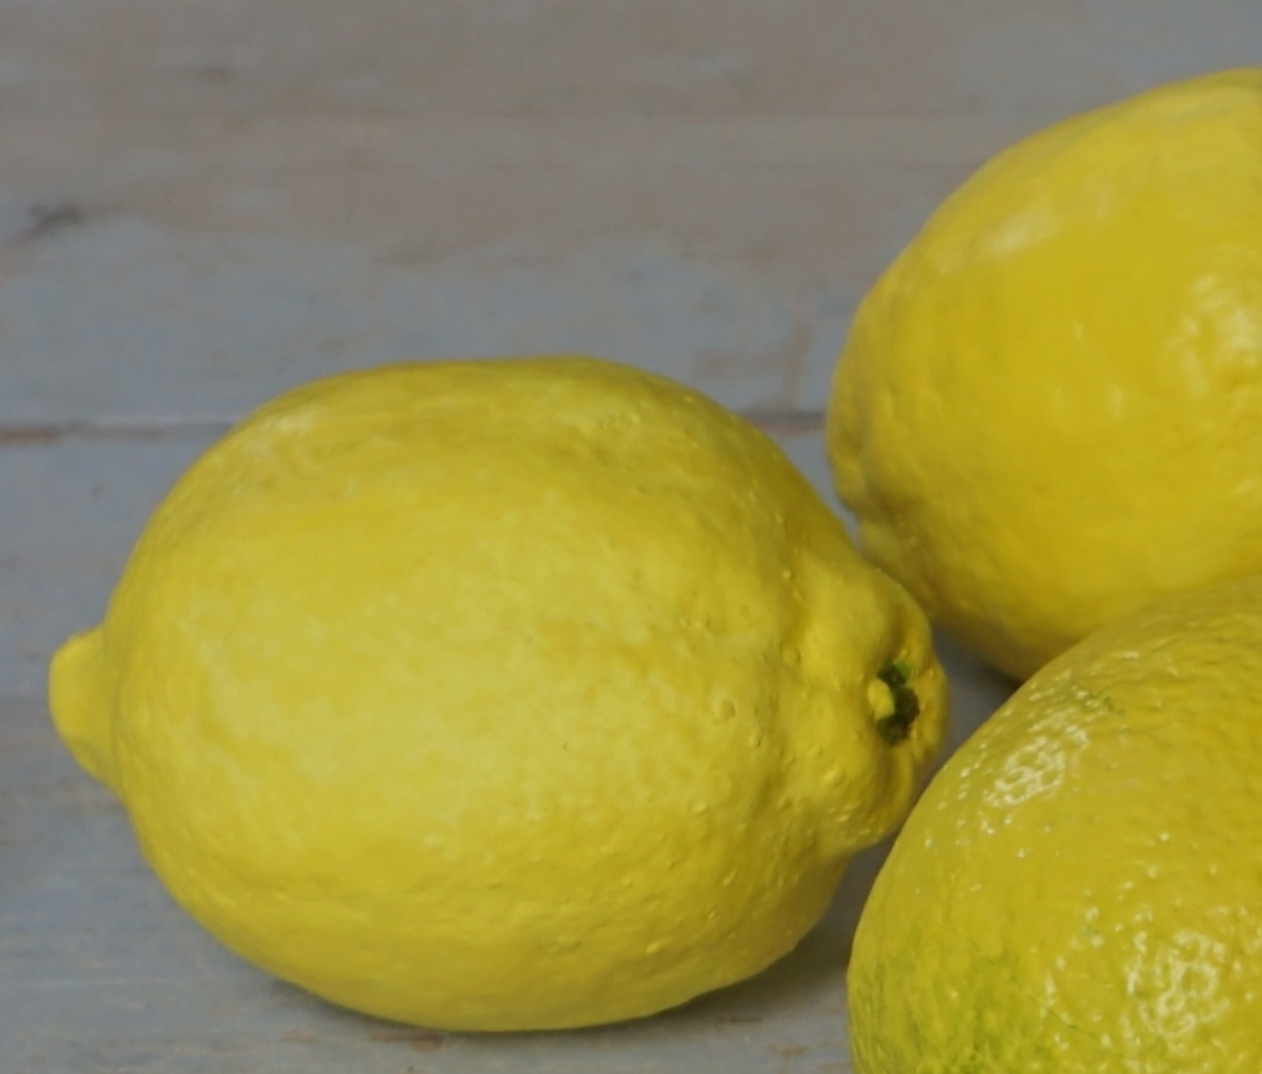 Pottery Study of a Lemon